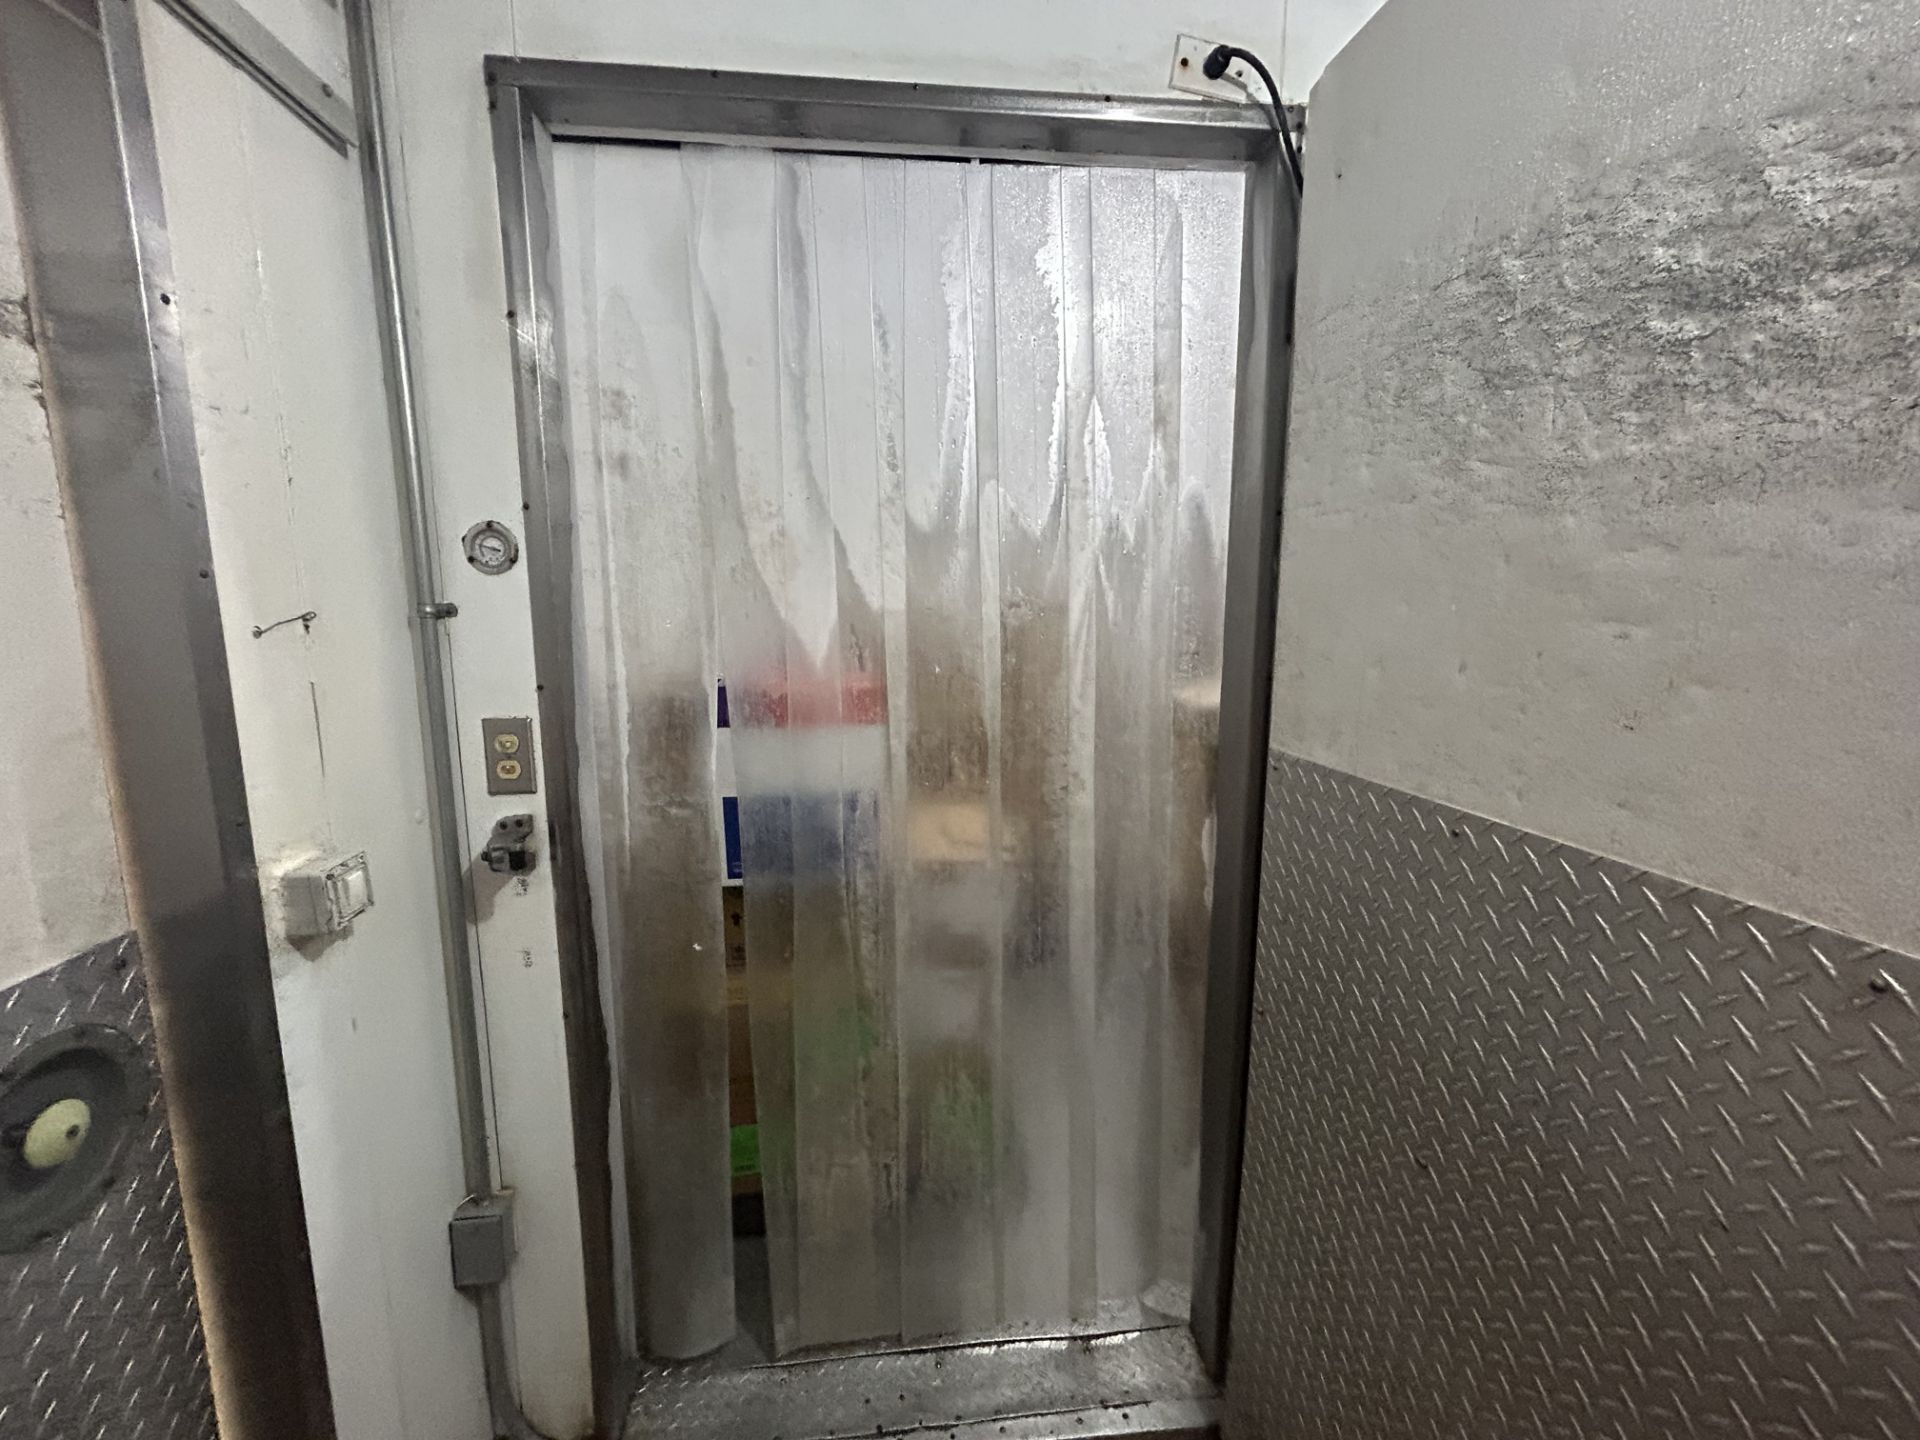 (Pago y remoción urgente) Cámara combo (comparten muro) de refrigeración y congelación para panader - Image 10 of 14